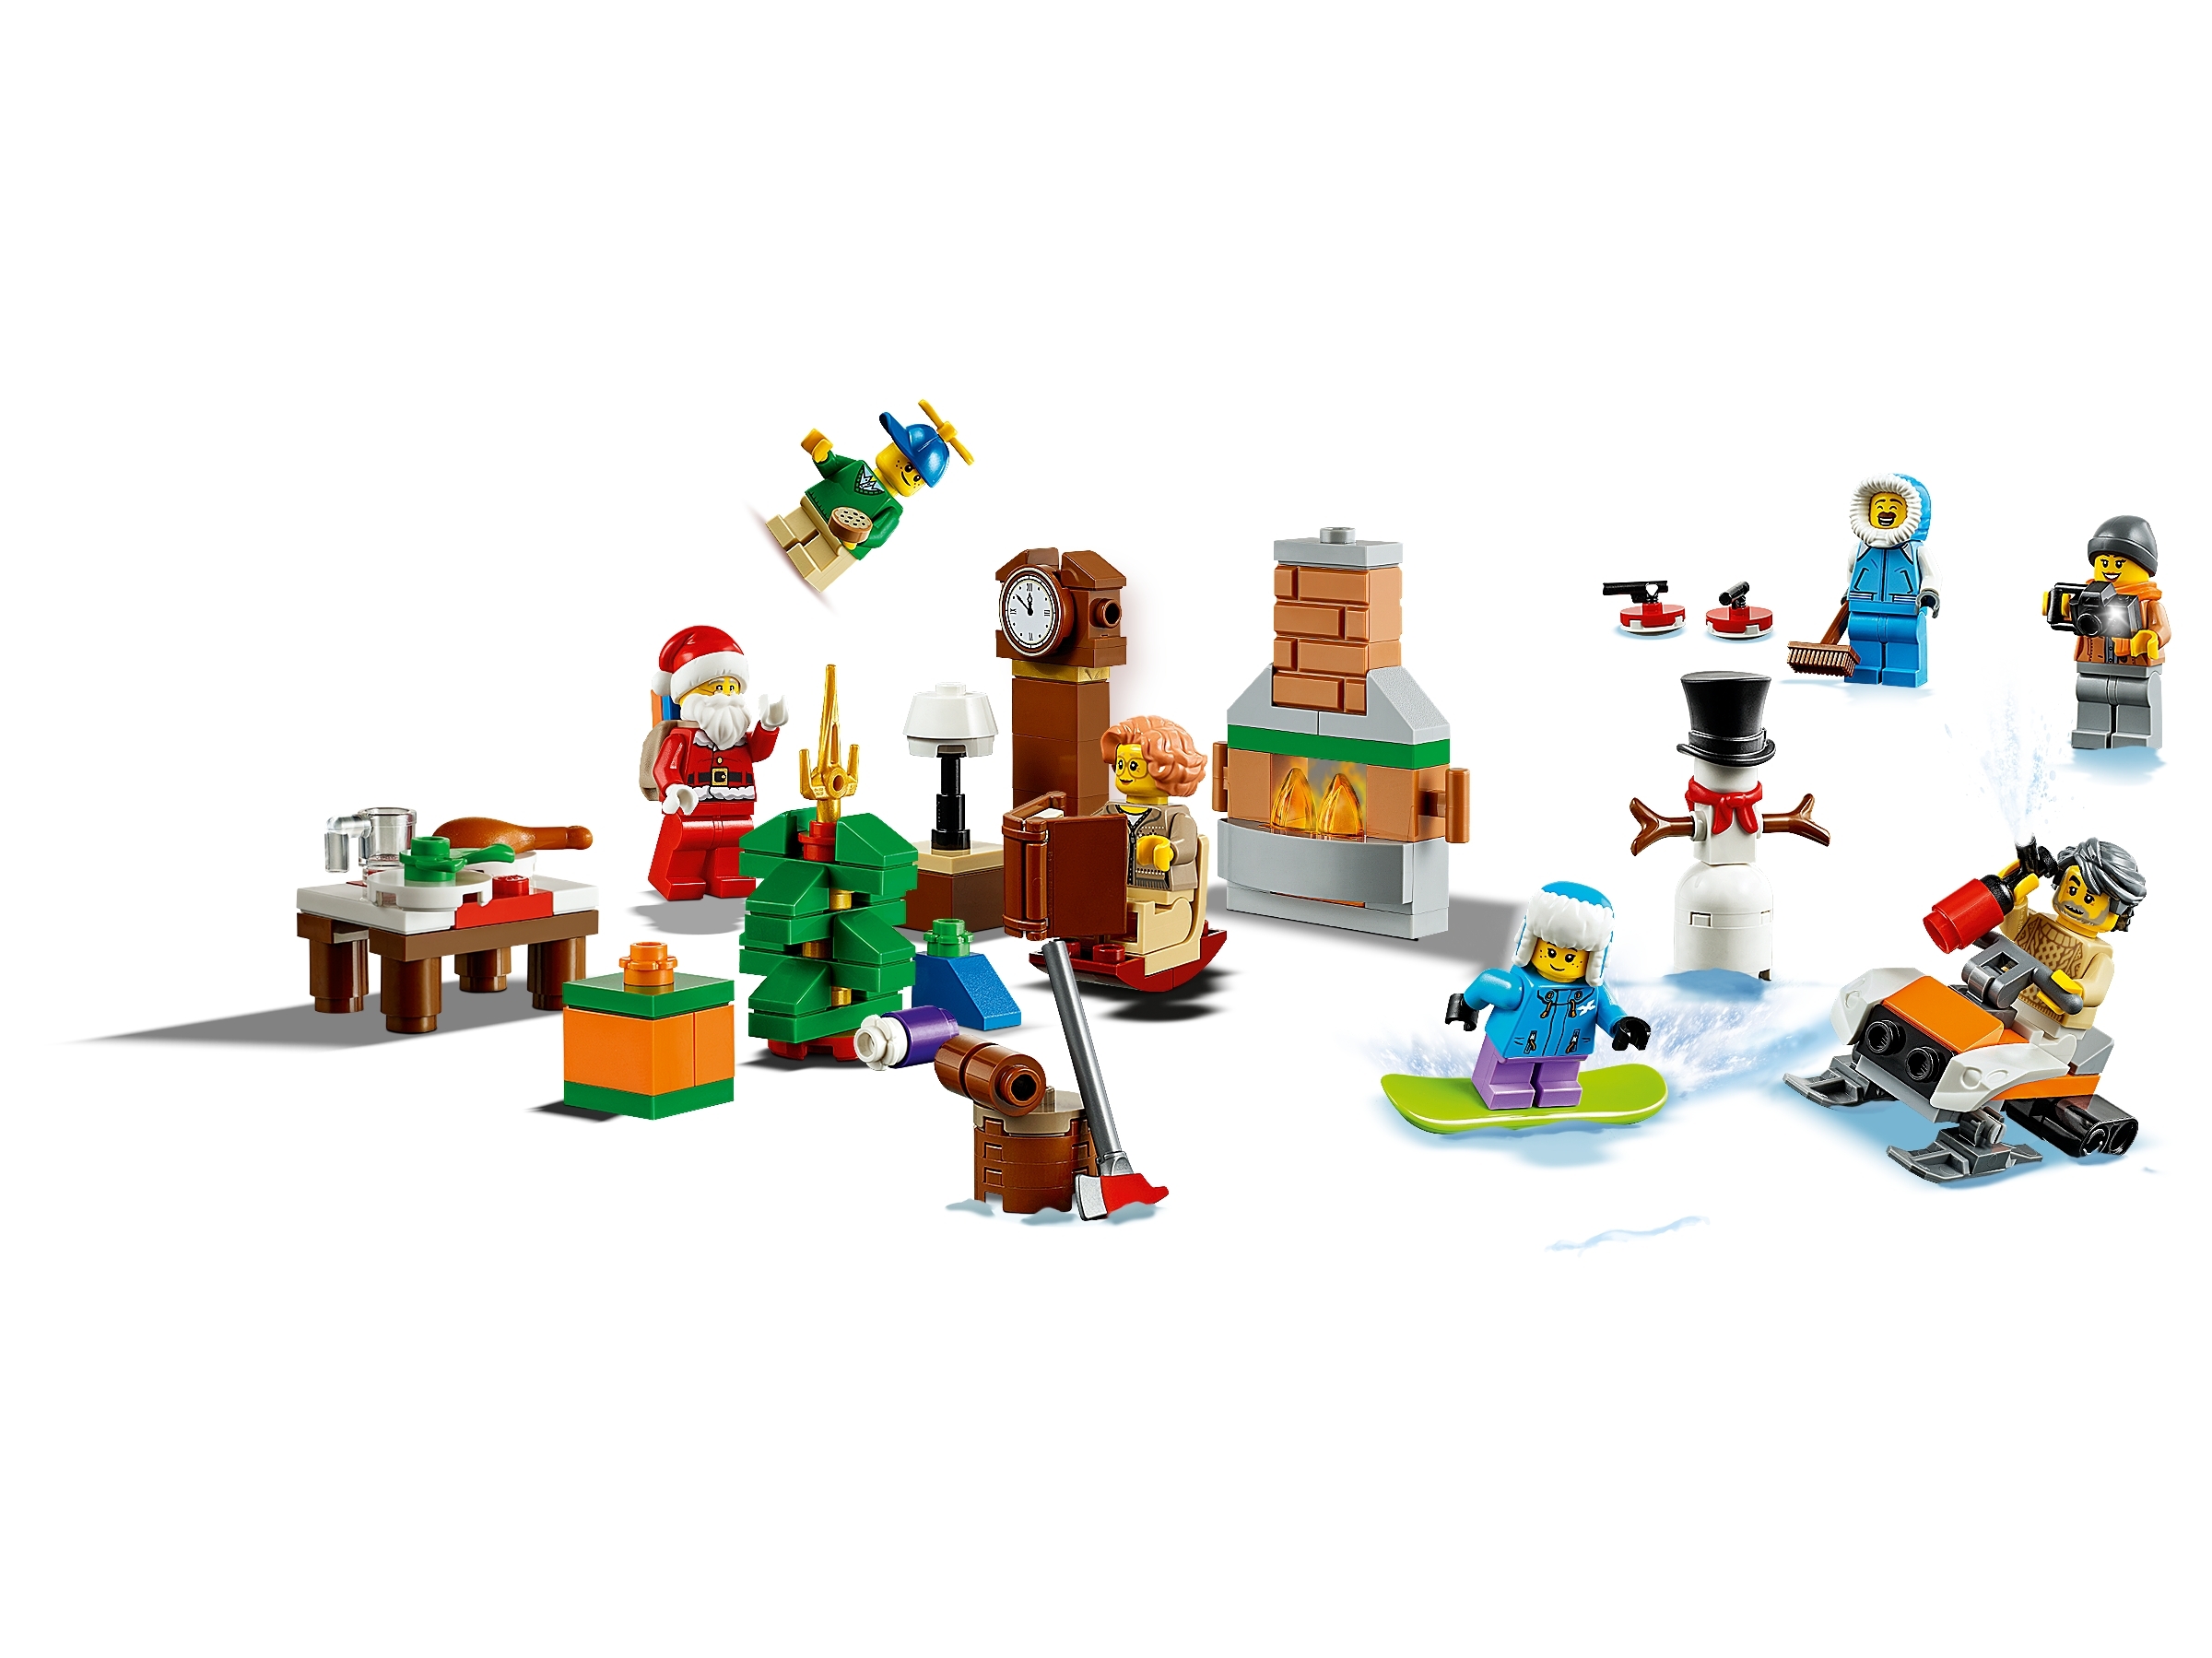 LEGO City Advent Calendar 60235 NEW 2019 Holiday Building Set 234